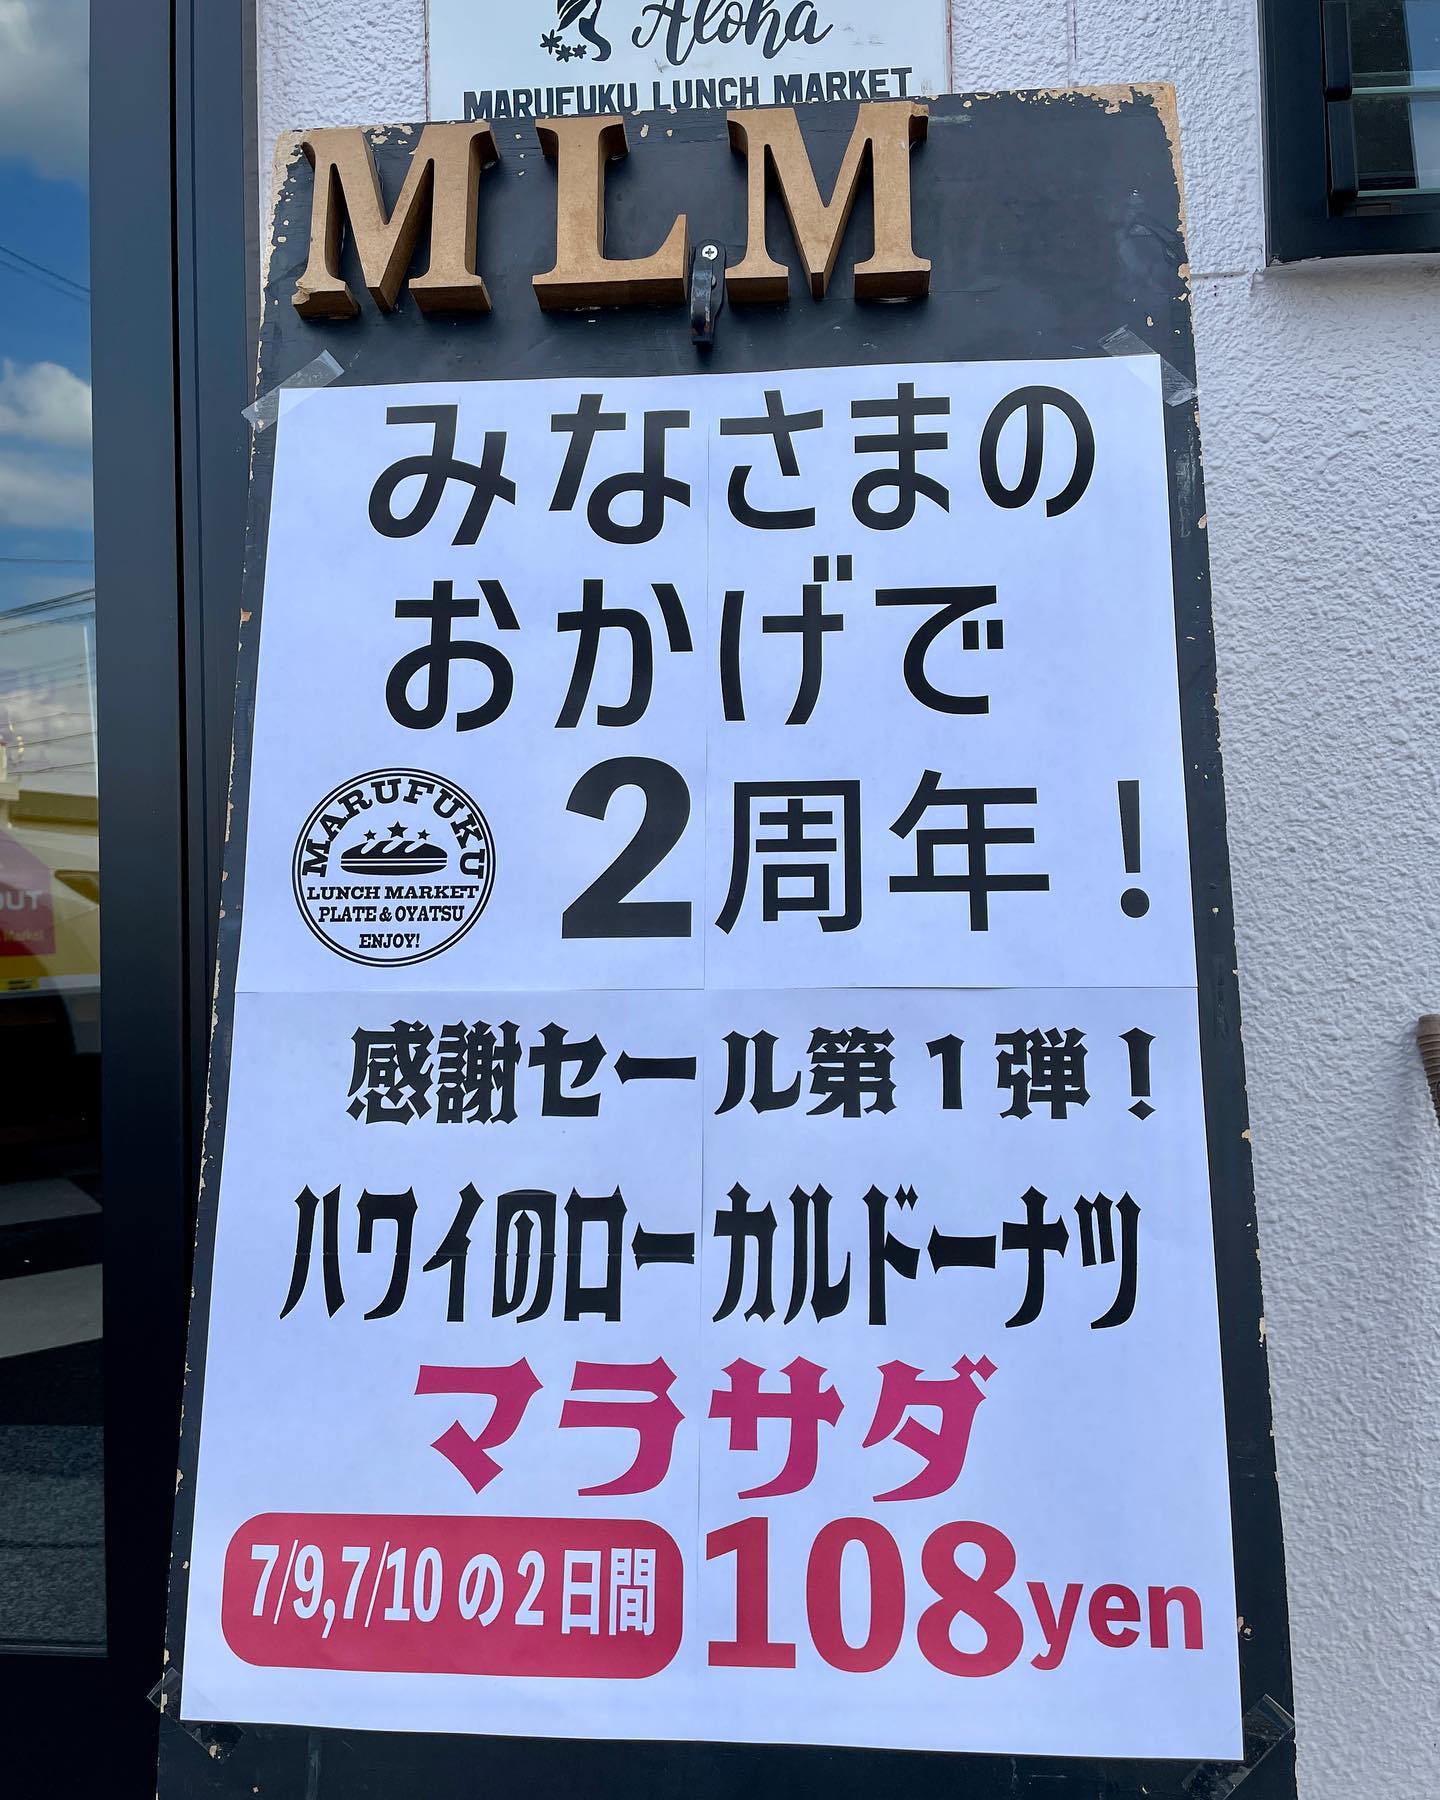 こんにちは
Marufuku lunch market2周年を迎えることができました️あっという間の2年…皆様にはご迷惑をおかけしたり、至らない部分も多々ありましたが、開発や改善を繰り返し3年目も微力な努力を繰り返して行きますので、どうぞ皆様お付き合いください‍♂️
そして、今月は細やかながらの感謝セールを実施します！まずは第1弾
『マラサダドーナツ』を１個108円(税込)で7月9日.7月10日の2日間、数に限りはありますが、この機会にぜひどうぞ